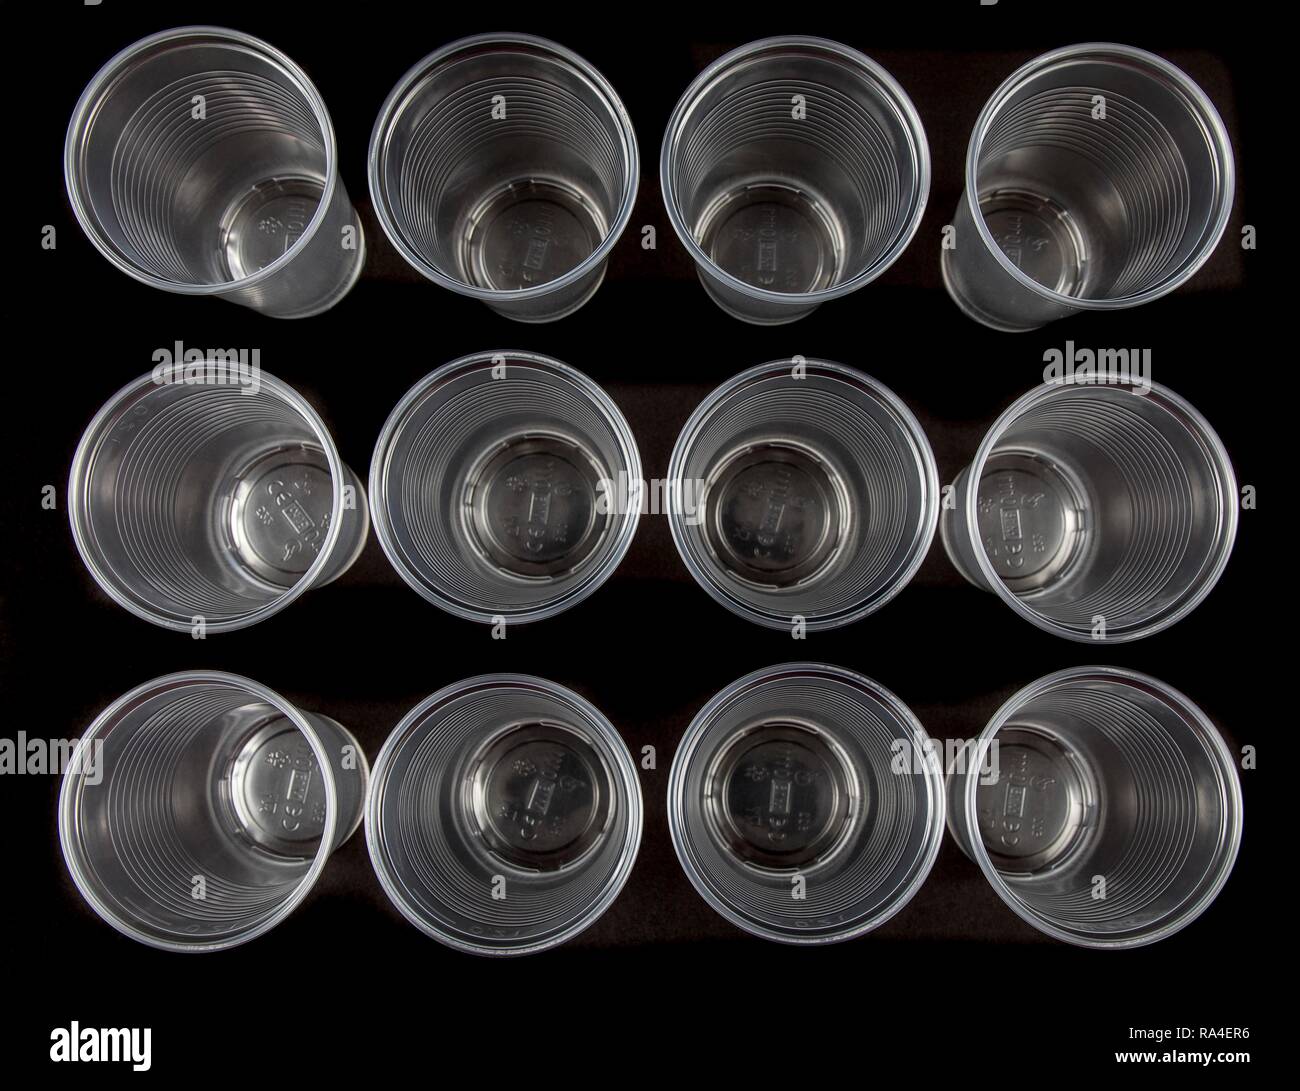 Tazze monouso, i bicchieri di plastica trasparente, 0, 2 litri, bicchieri, tazze monouso, rifiuti in plastica Foto Stock